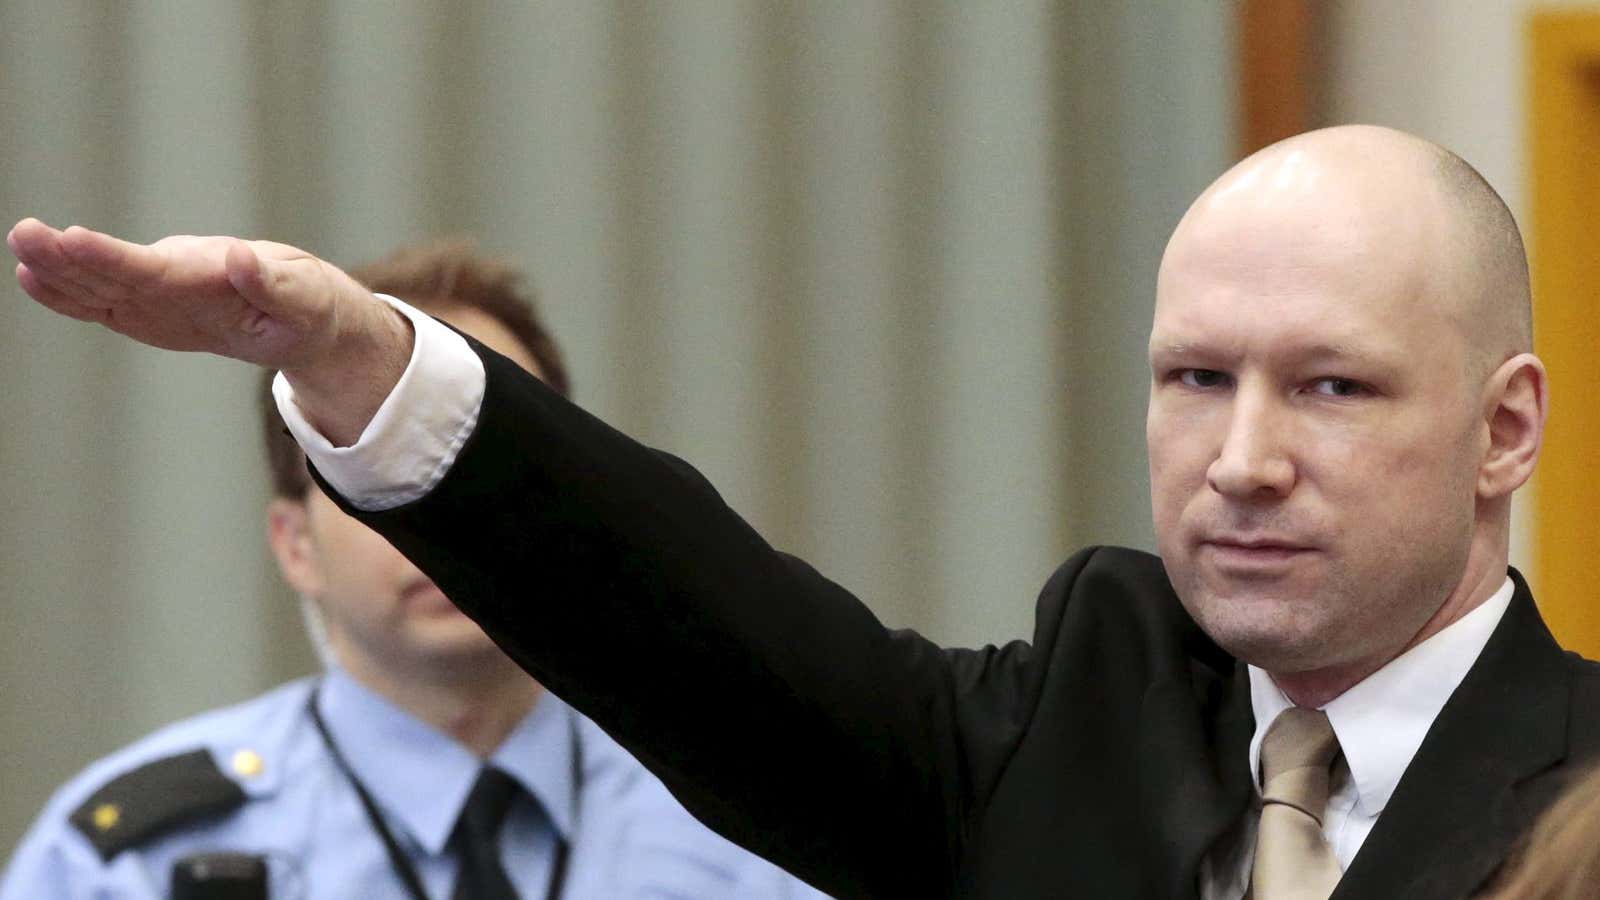 Breivik enjoys media attention.